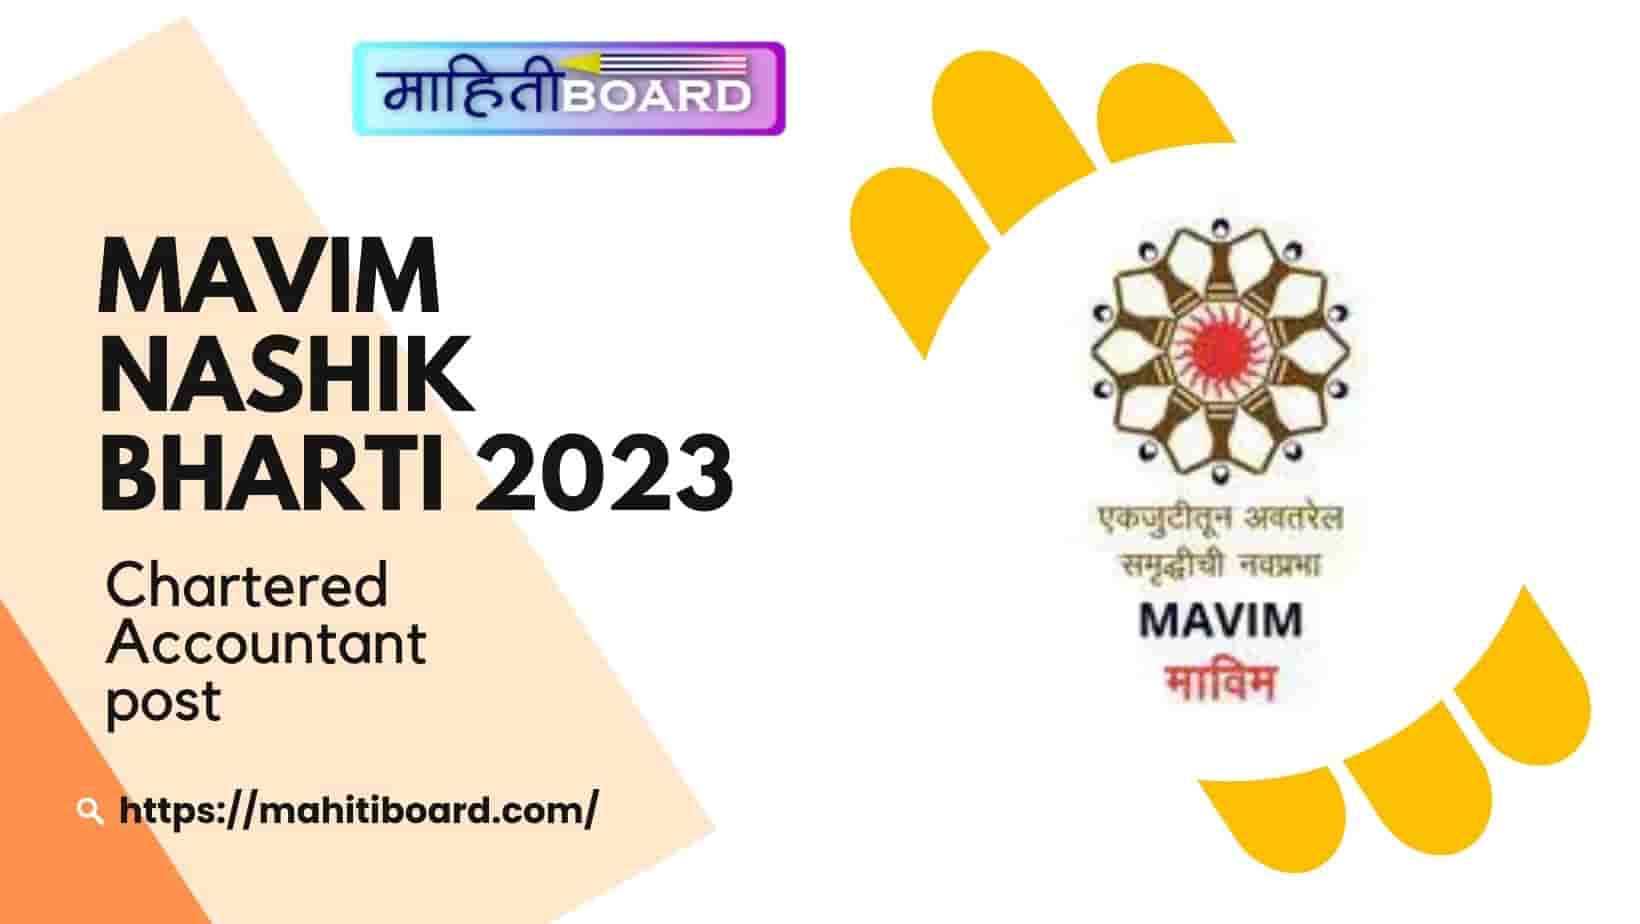 MAVIM Nashik Bharti 2023